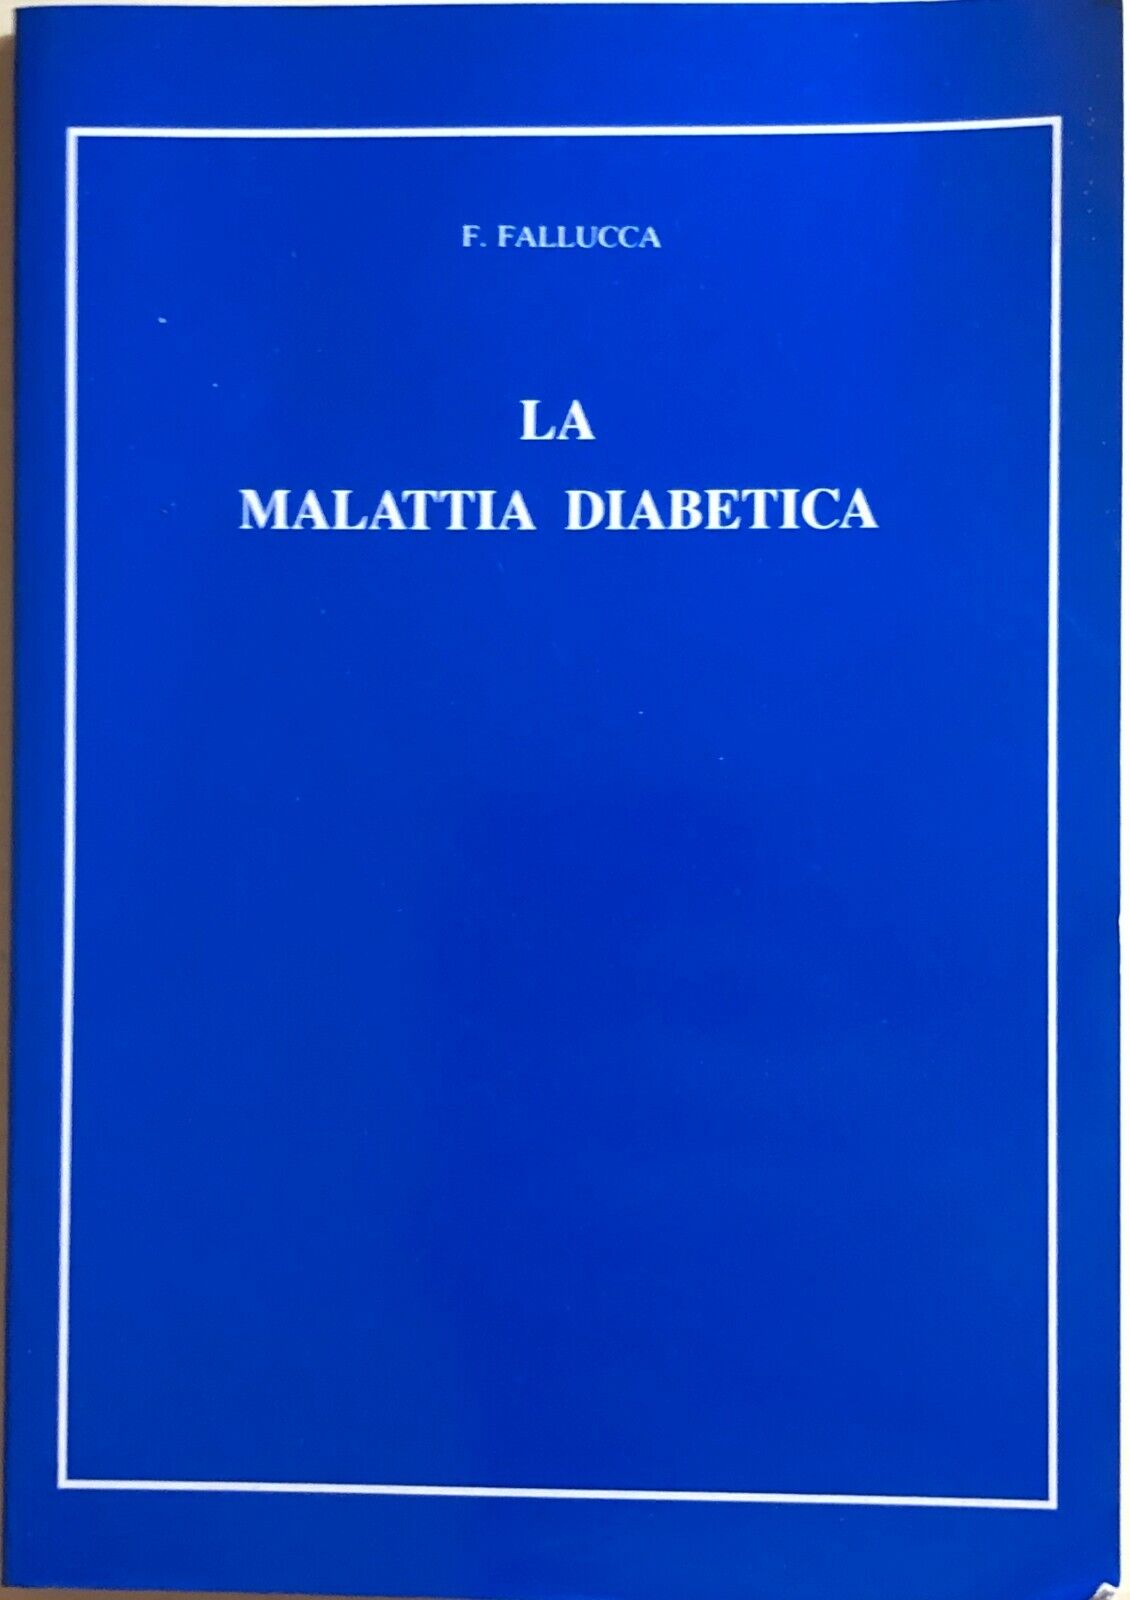 La malattia diabetica di F.Fallucca, 1994, Laboratori Guidotti SPA Pisa